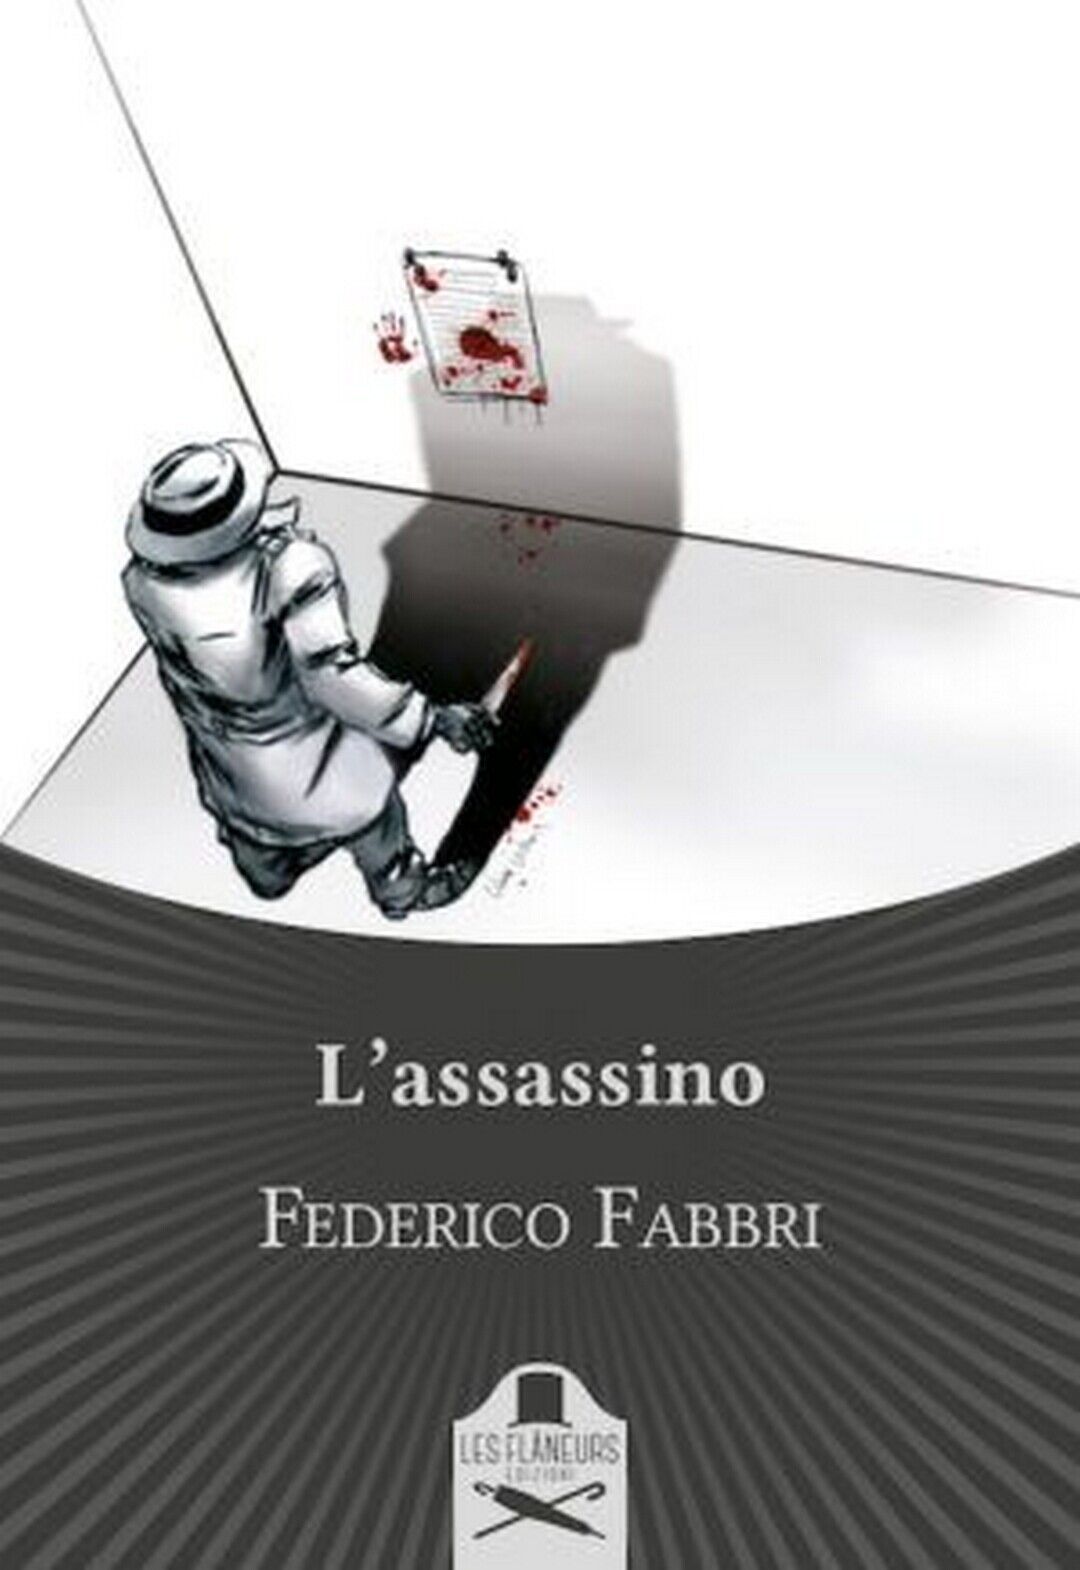   L'assassino  di Federico Fabbri ,  Les Flaneurs